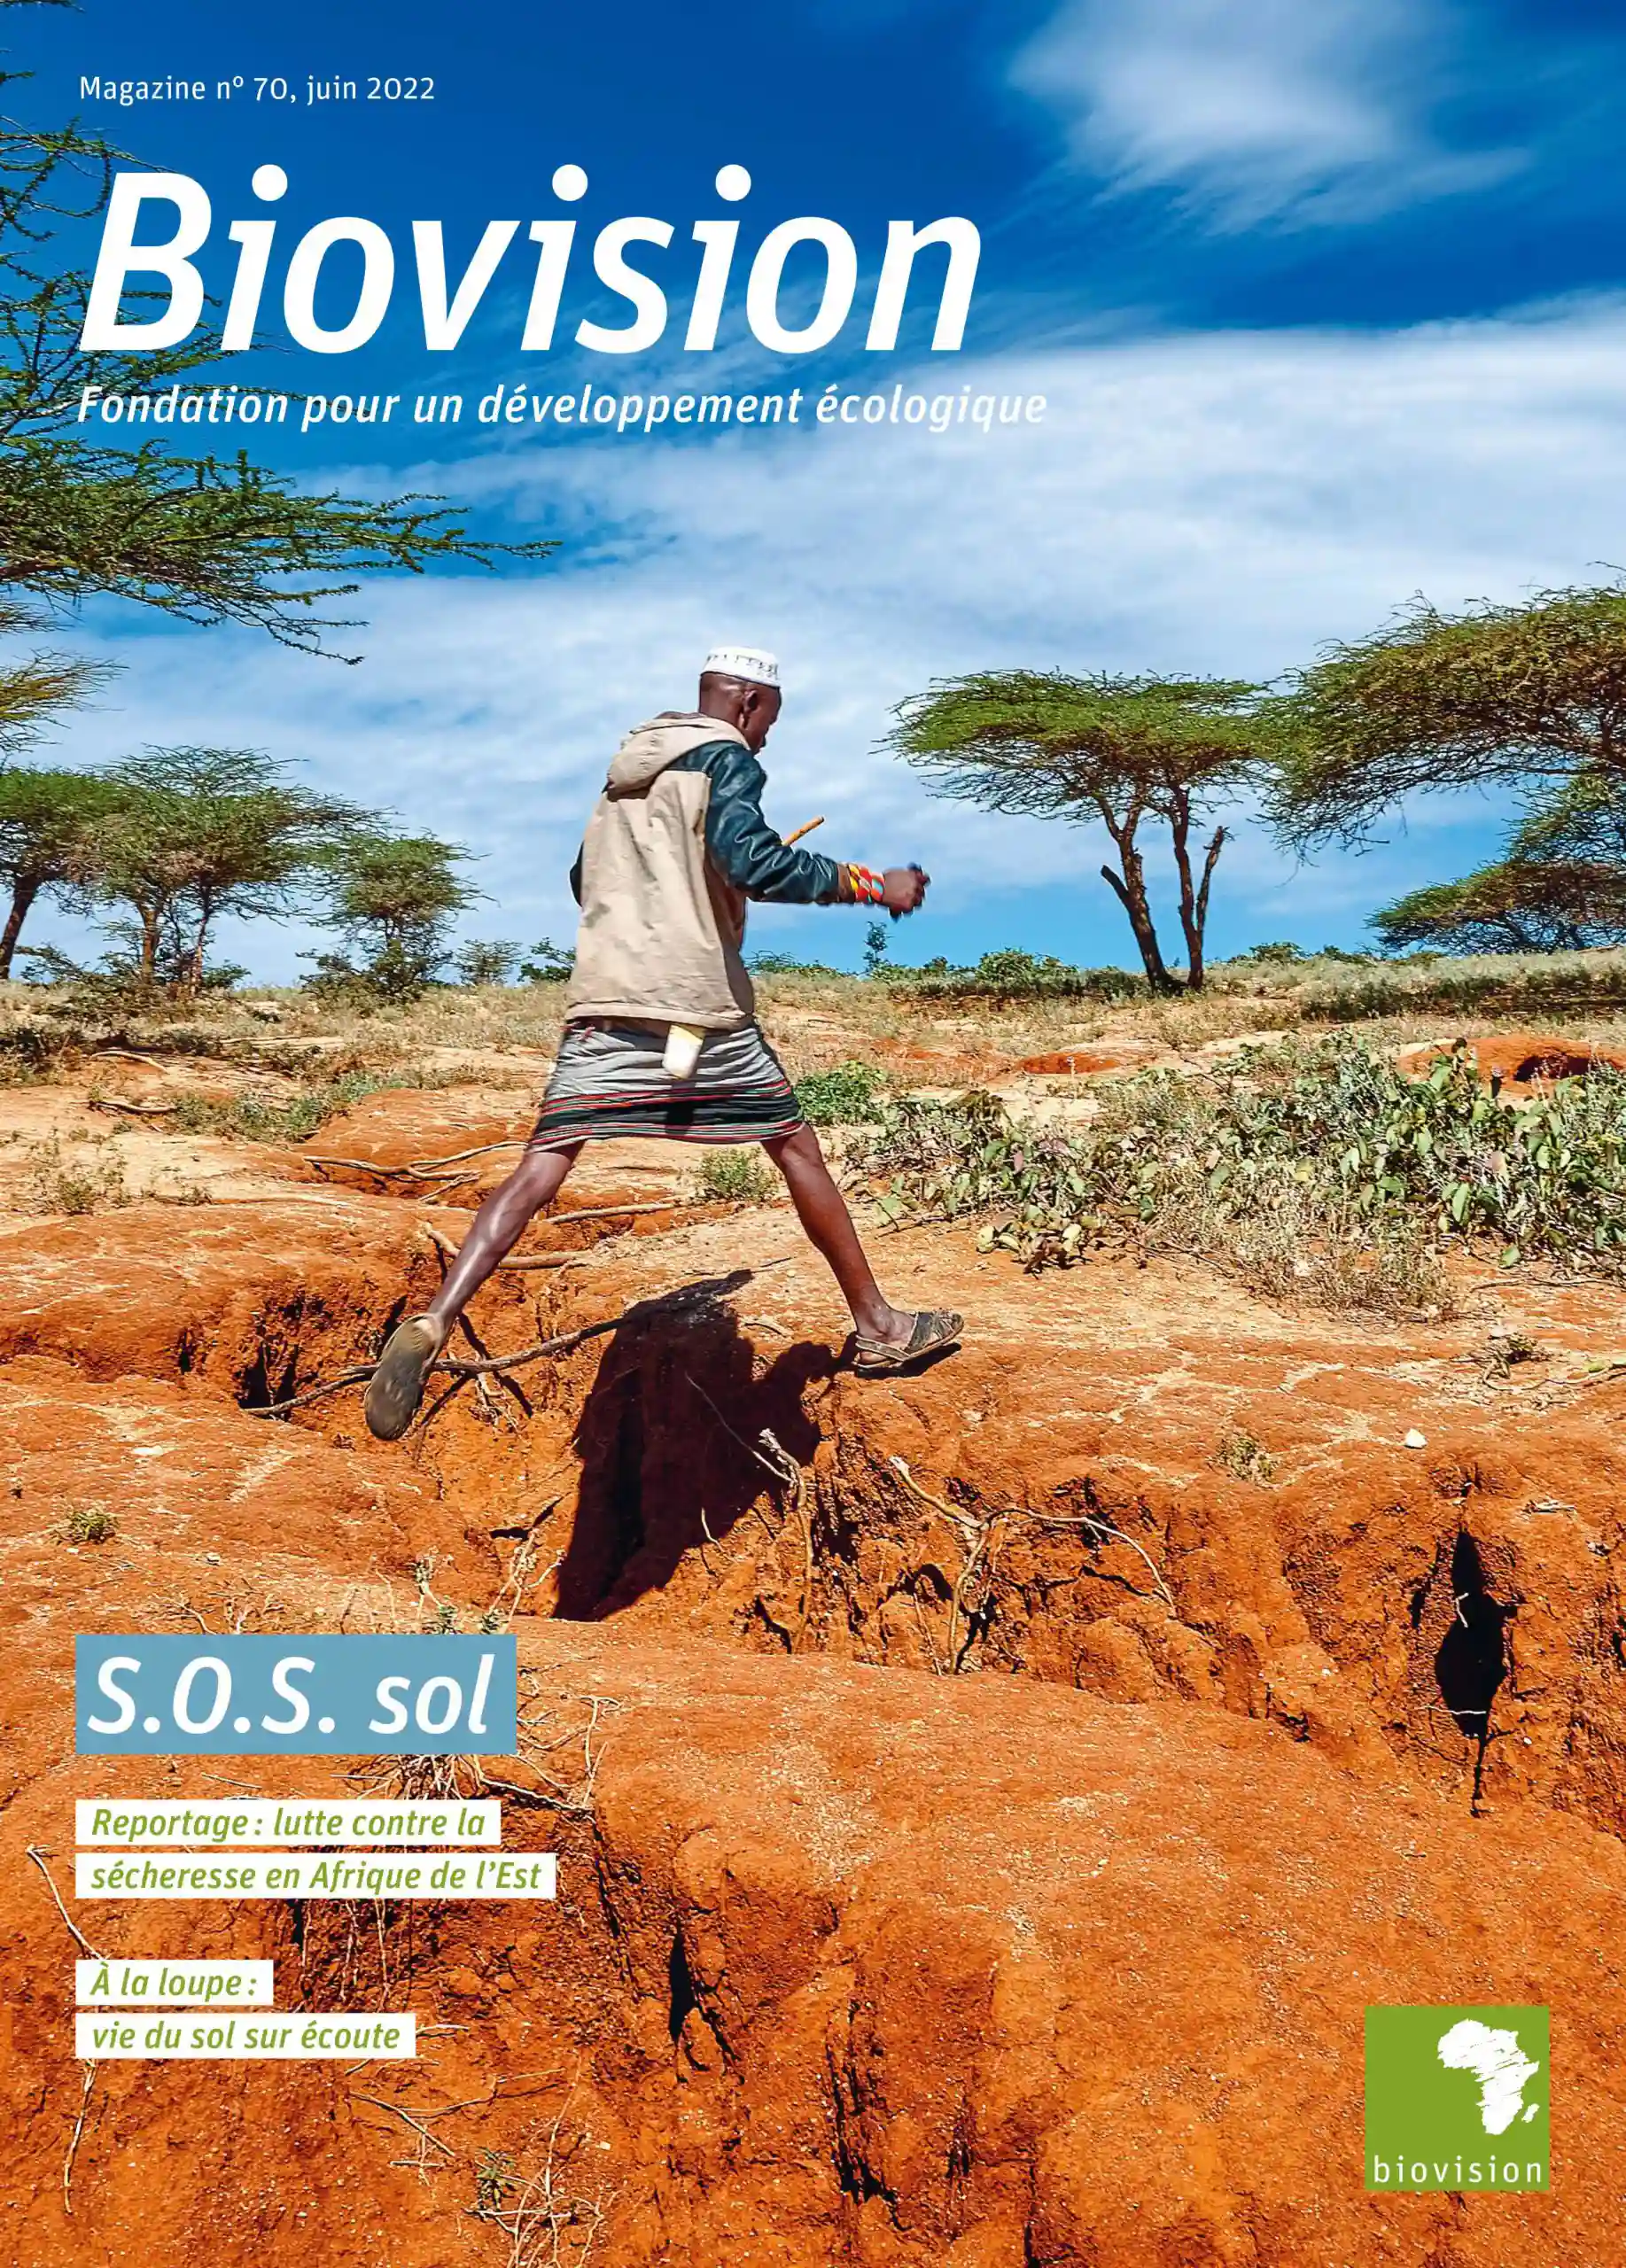 Das Titelbild des Biovision-Magazins zeigt einen Mann, der über einen tiefen Graben in der roten Erde springt.